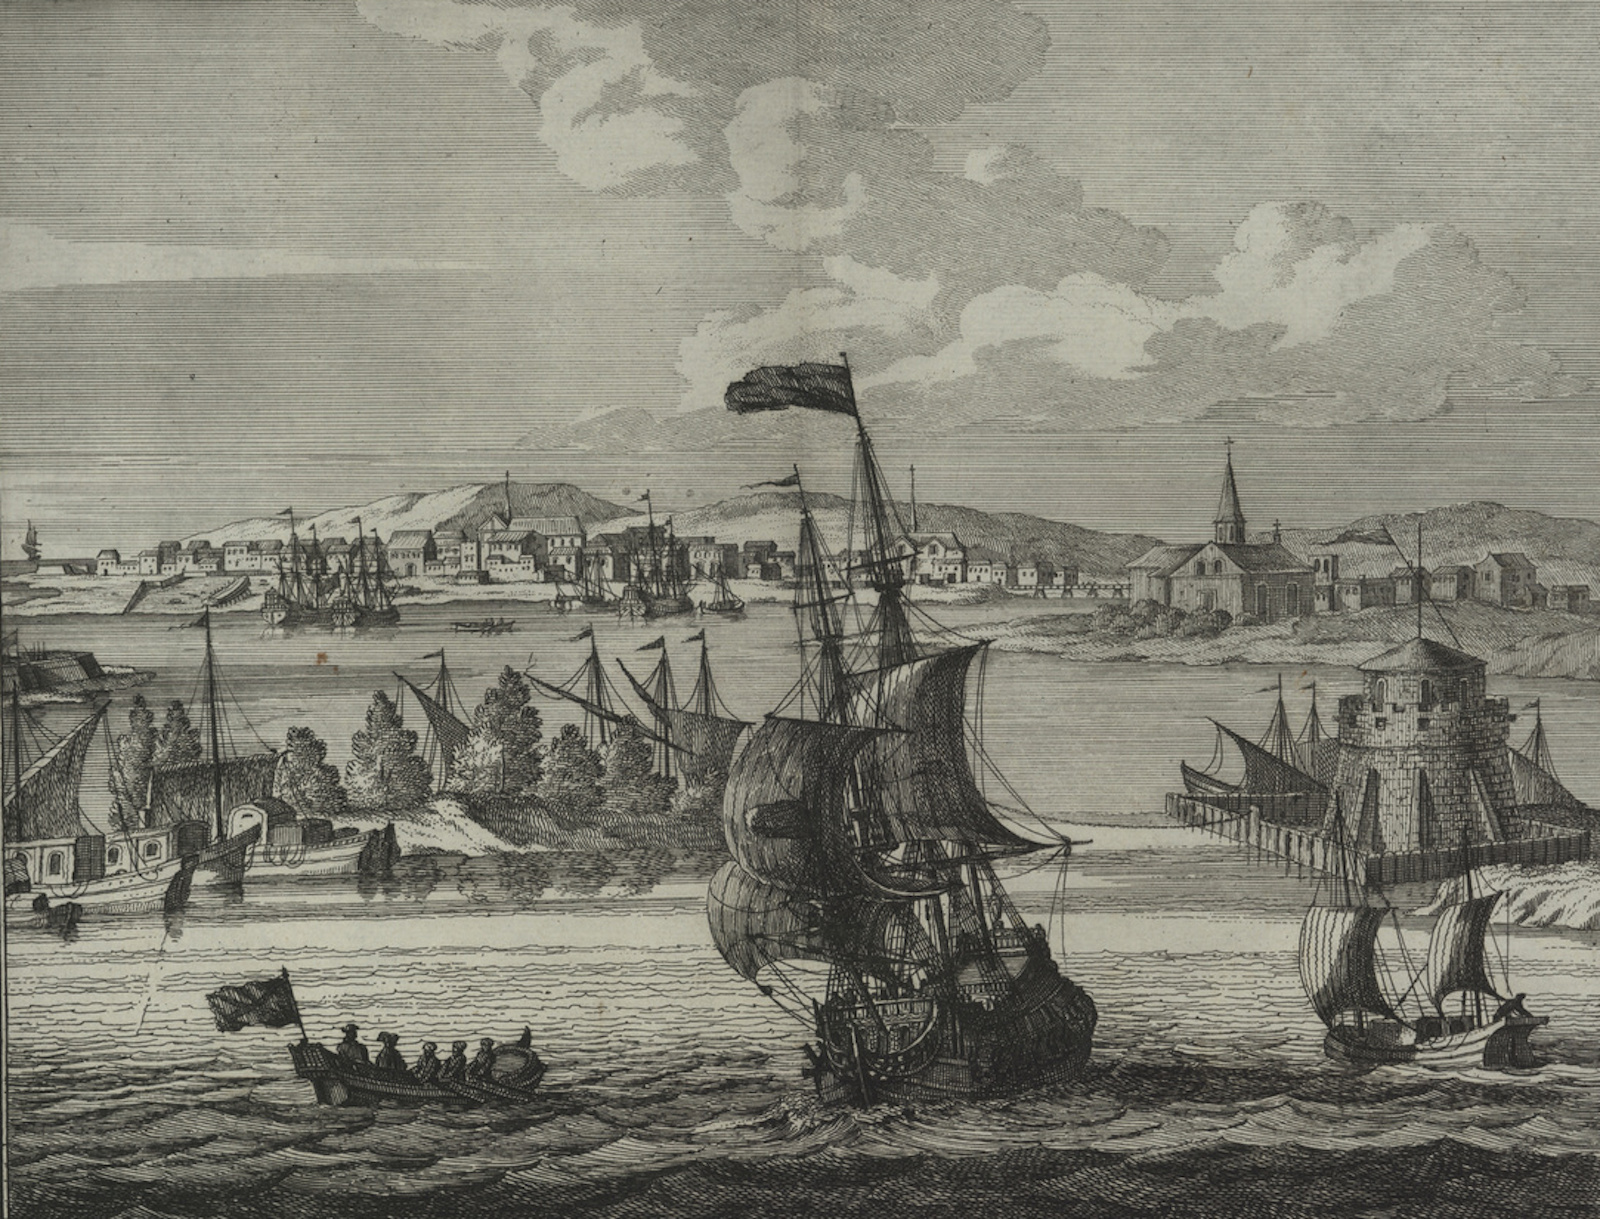 A view of Cartagena de Indias, 1702. Deutsche Fotothek. Public Domain.